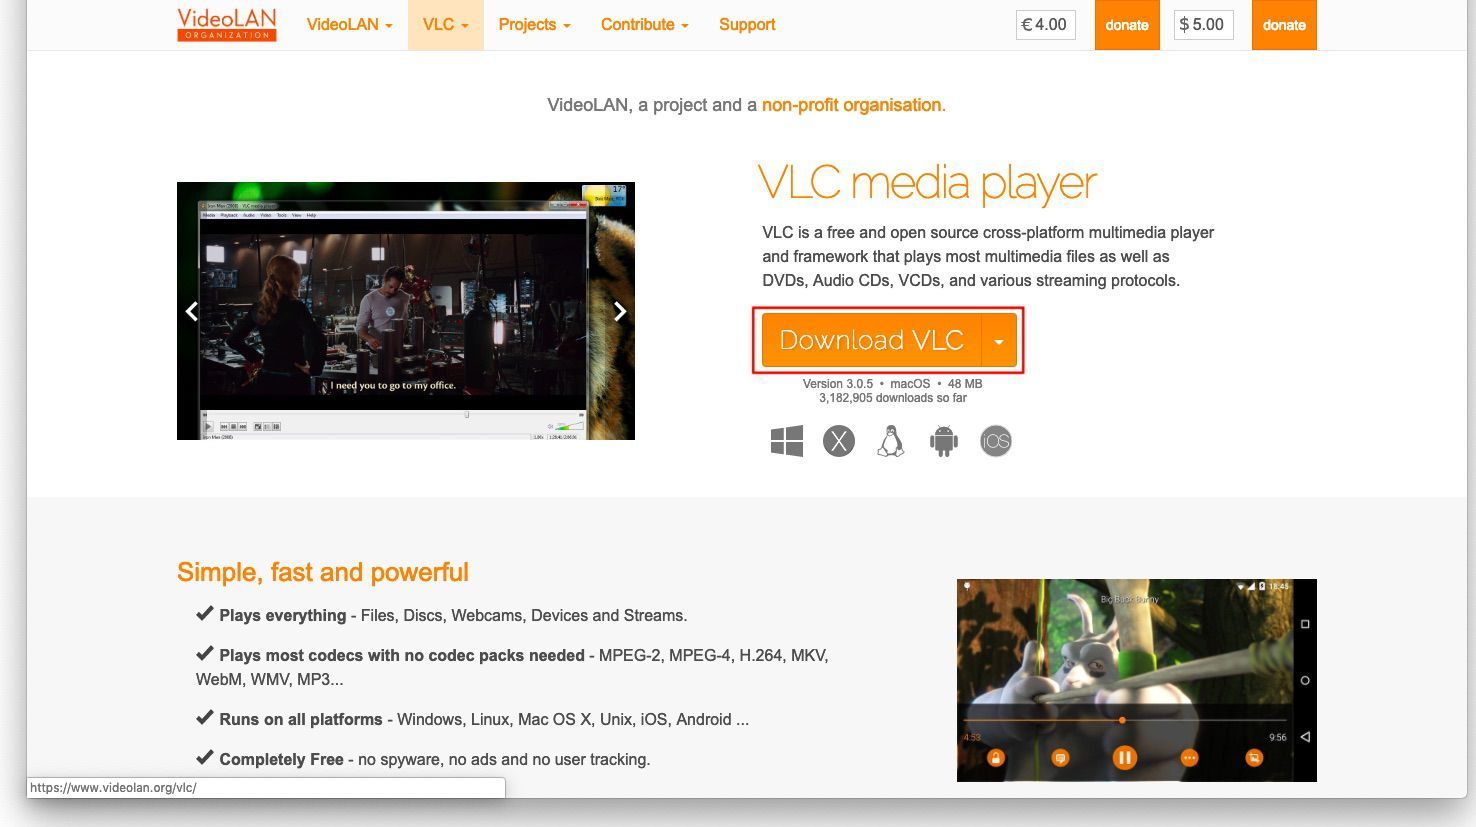 Снимок экрана веб-сайта VLC с выделенной кнопкой Download VLC.